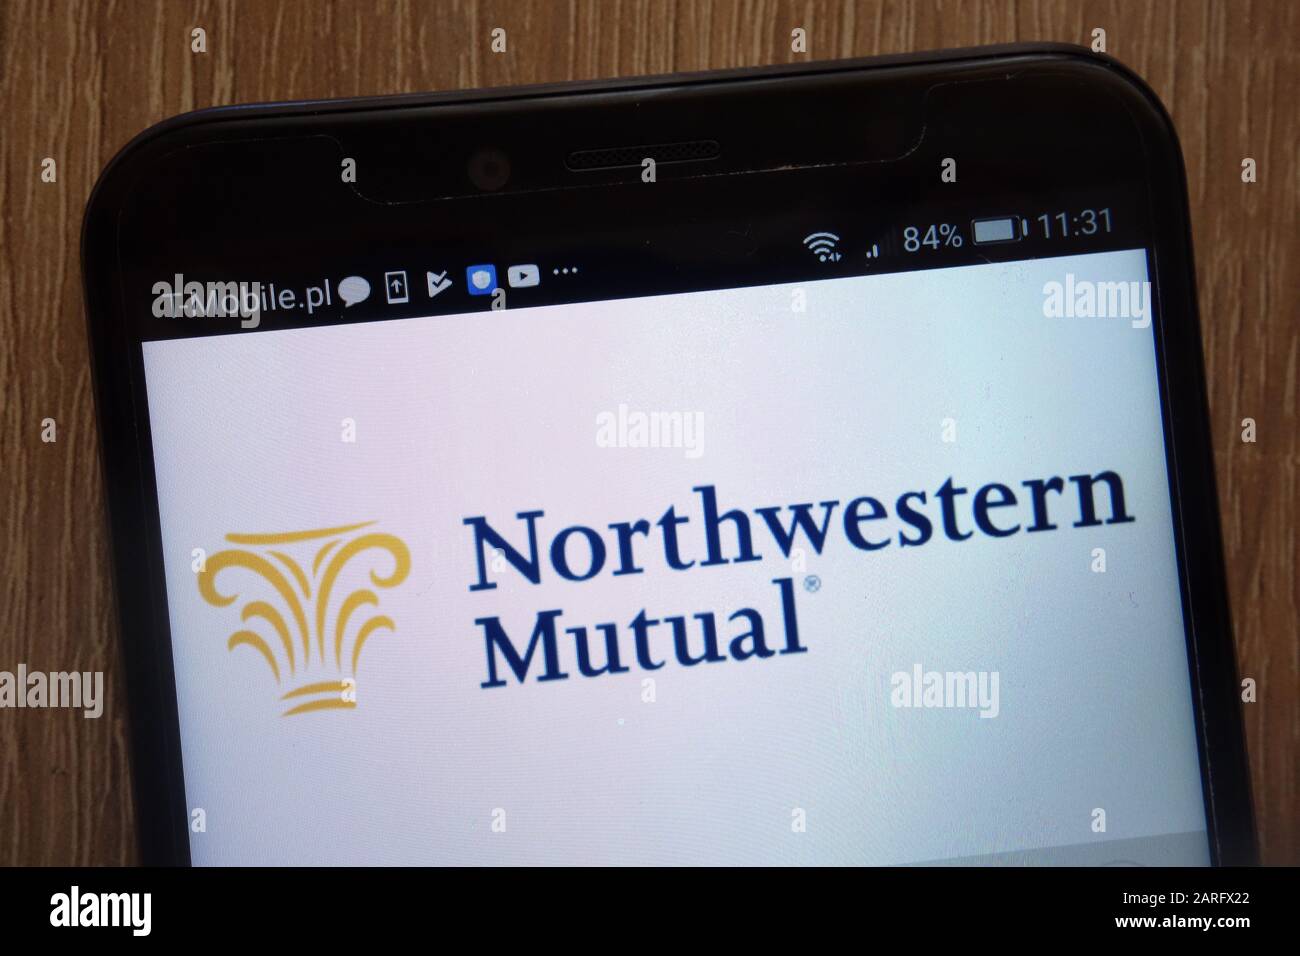 Logotipo de Northwestern Mutual mostrado en un smartphone moderno Foto de stock